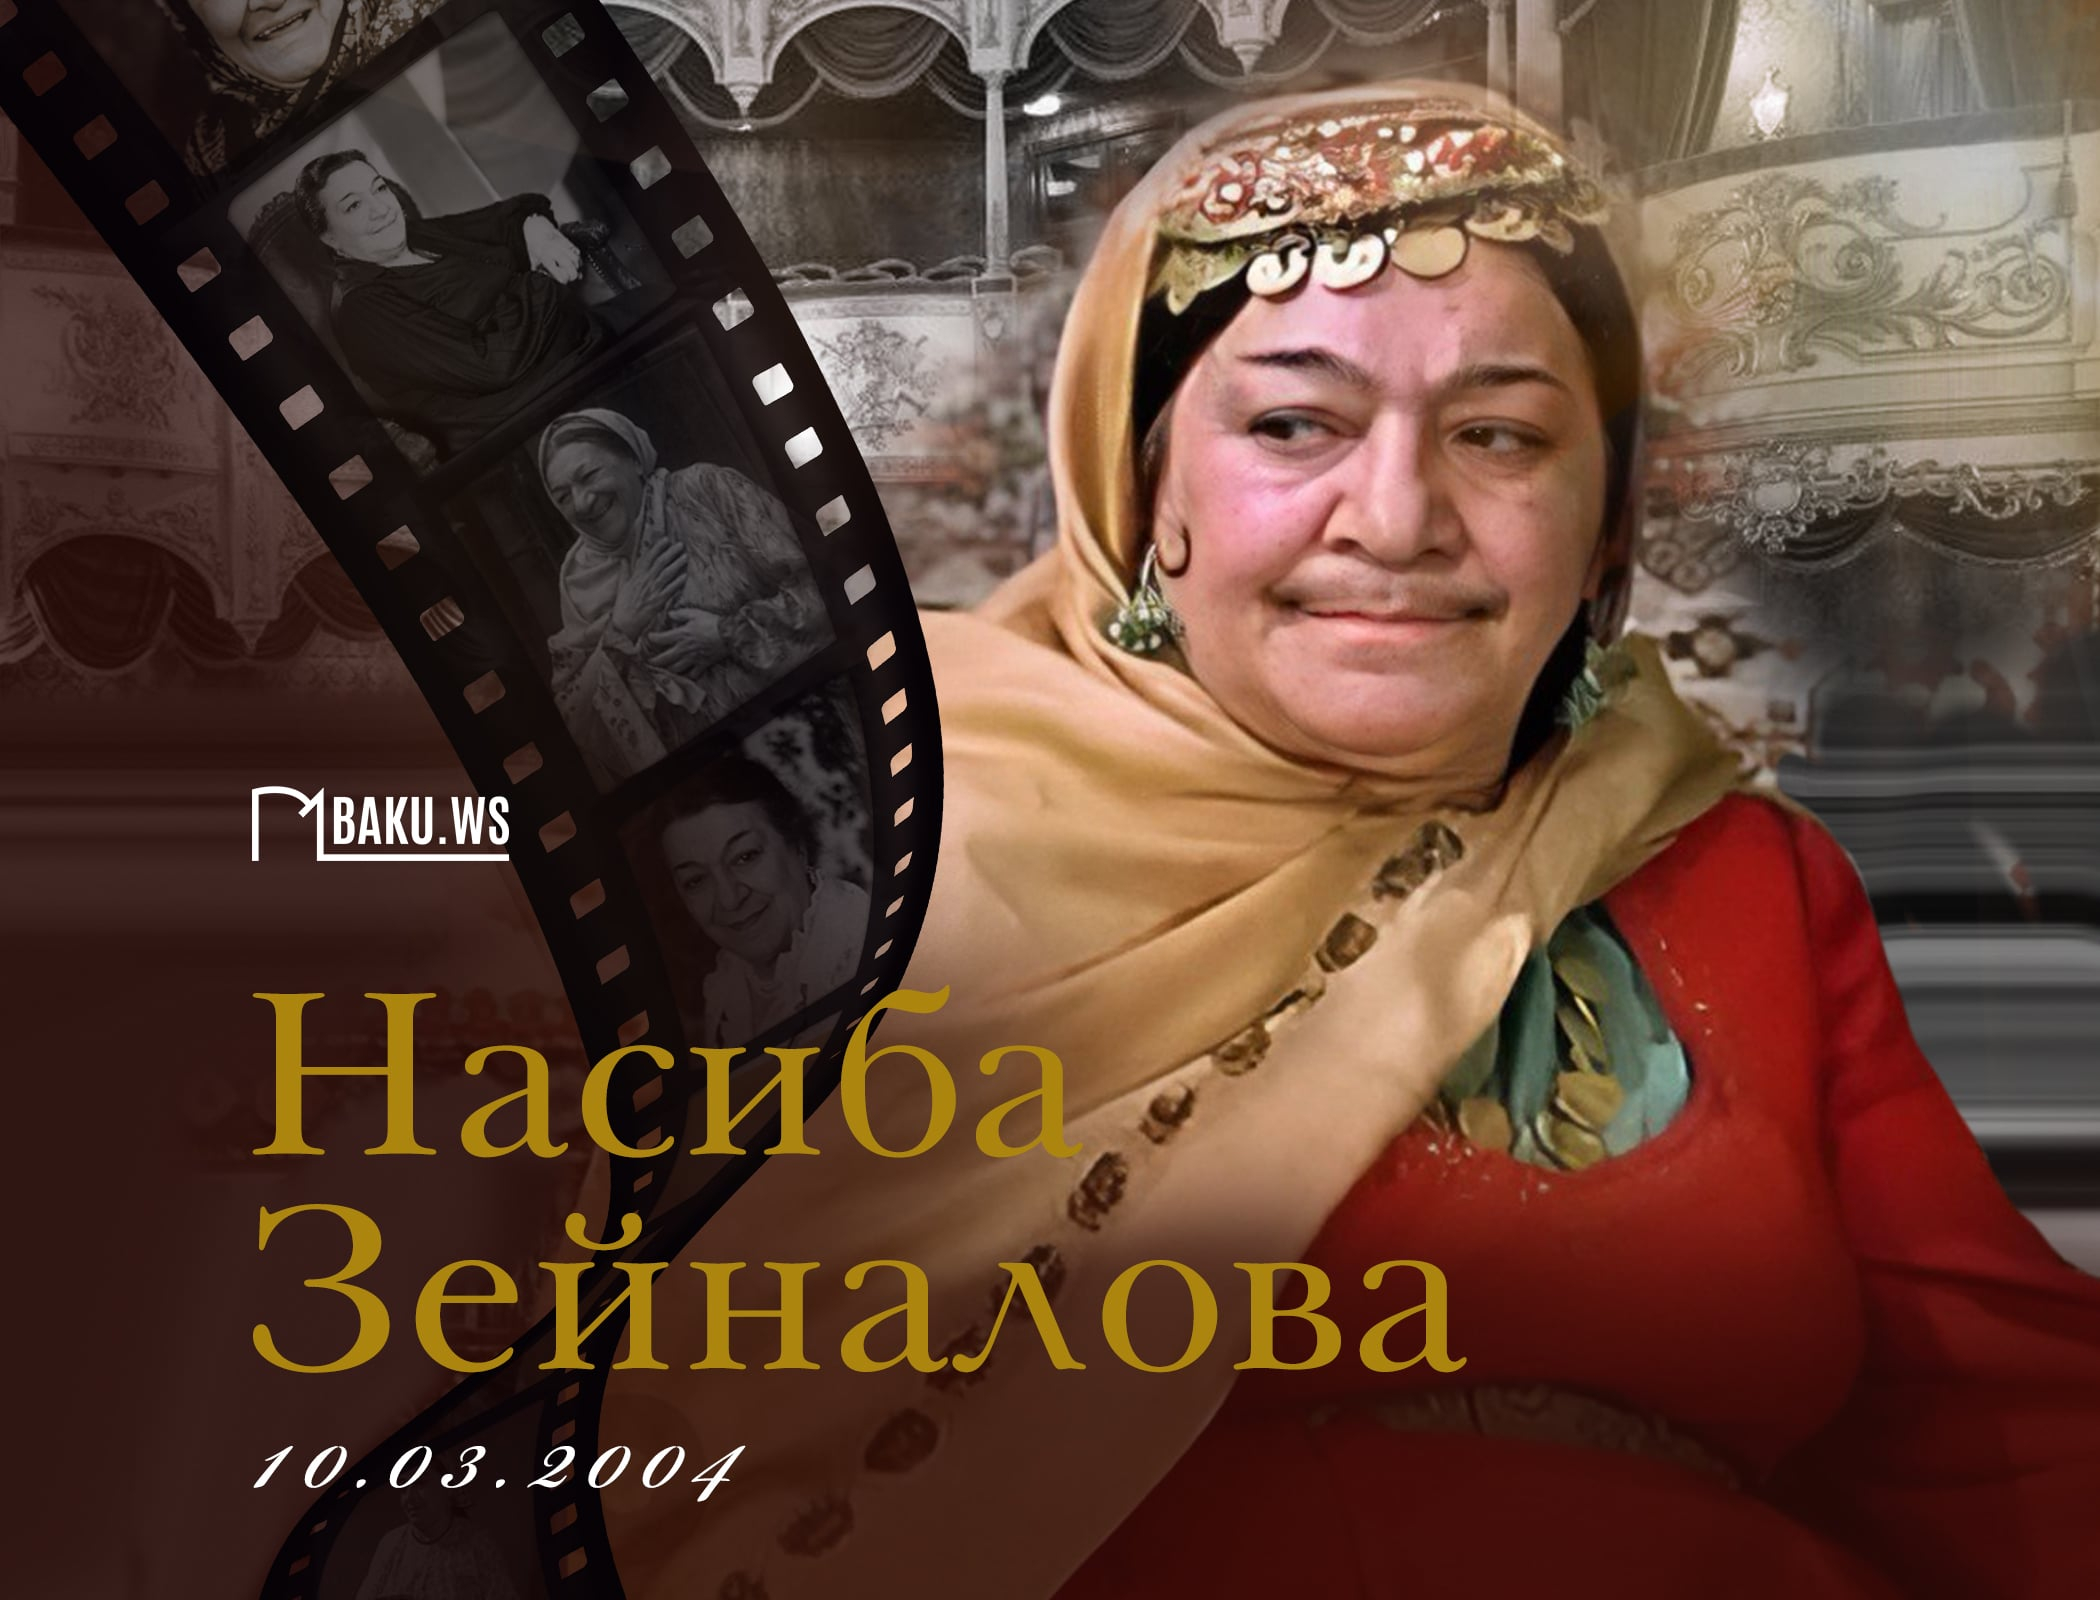 Сегодня день памяти азербайджанской актрисы Насибы Зейналовой